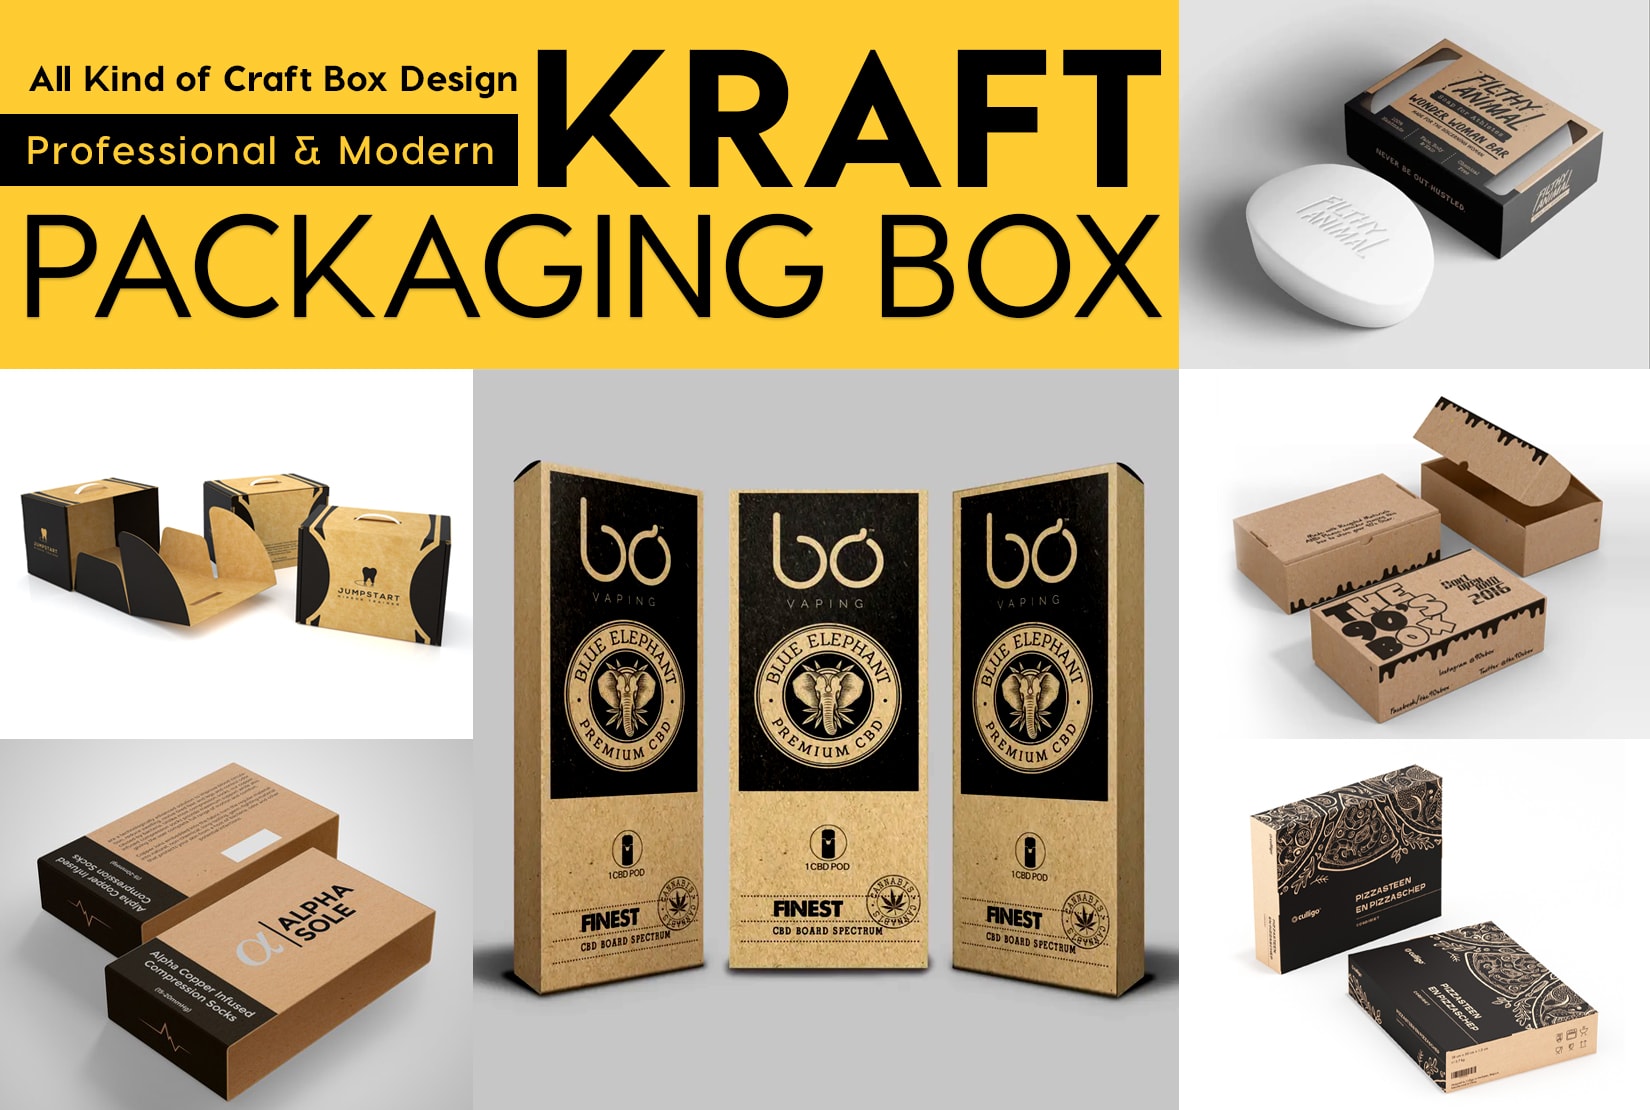 Créer une excellente boîte kraft, concevoir une boîte d'emballage artisanale